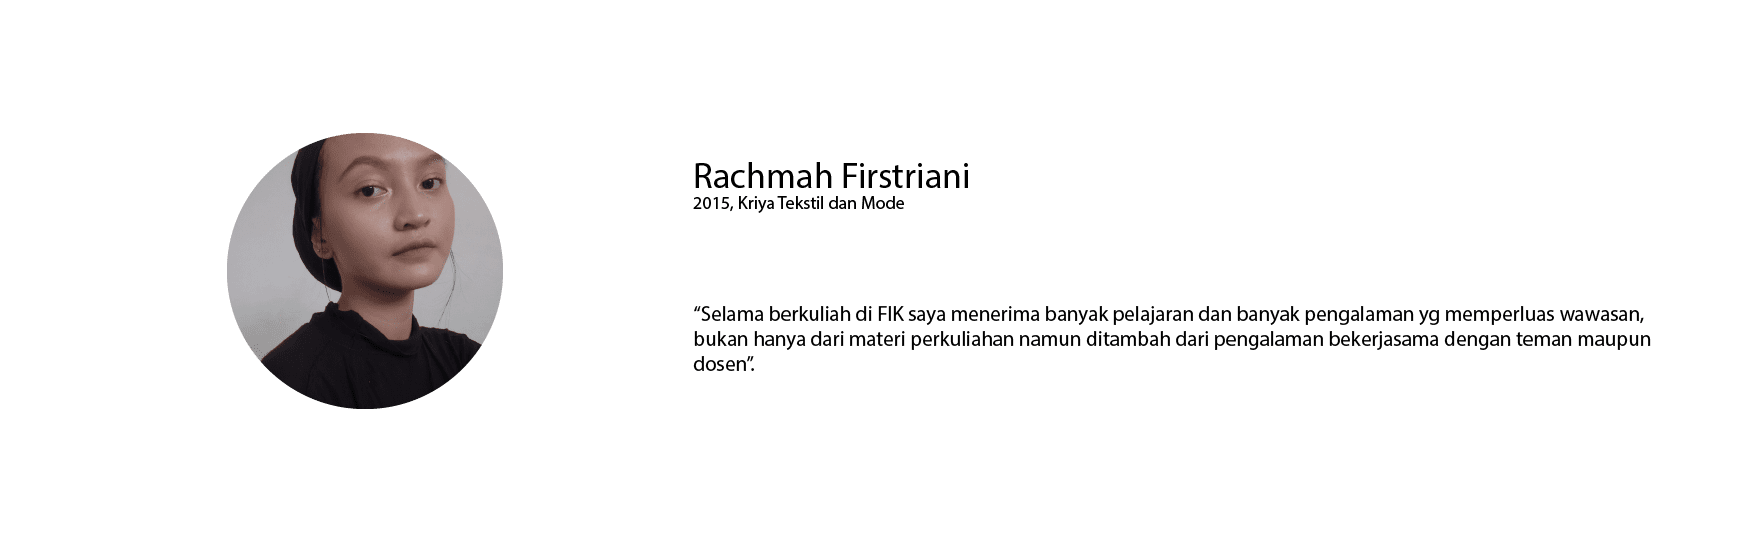 Testi_Rachmah-01